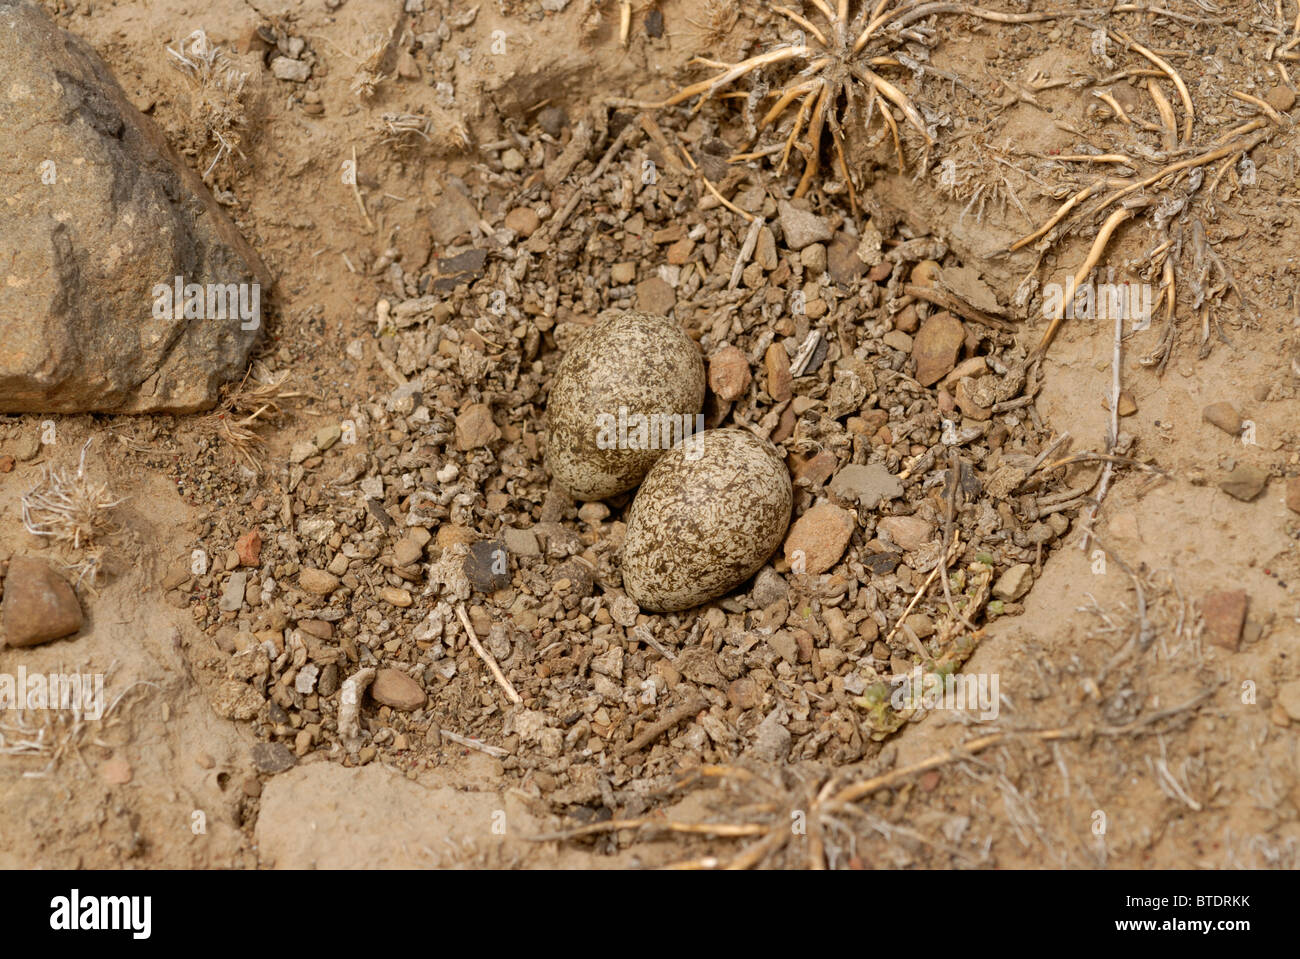 Nest and eggs of Kittliz's plover before burial Stock Photo